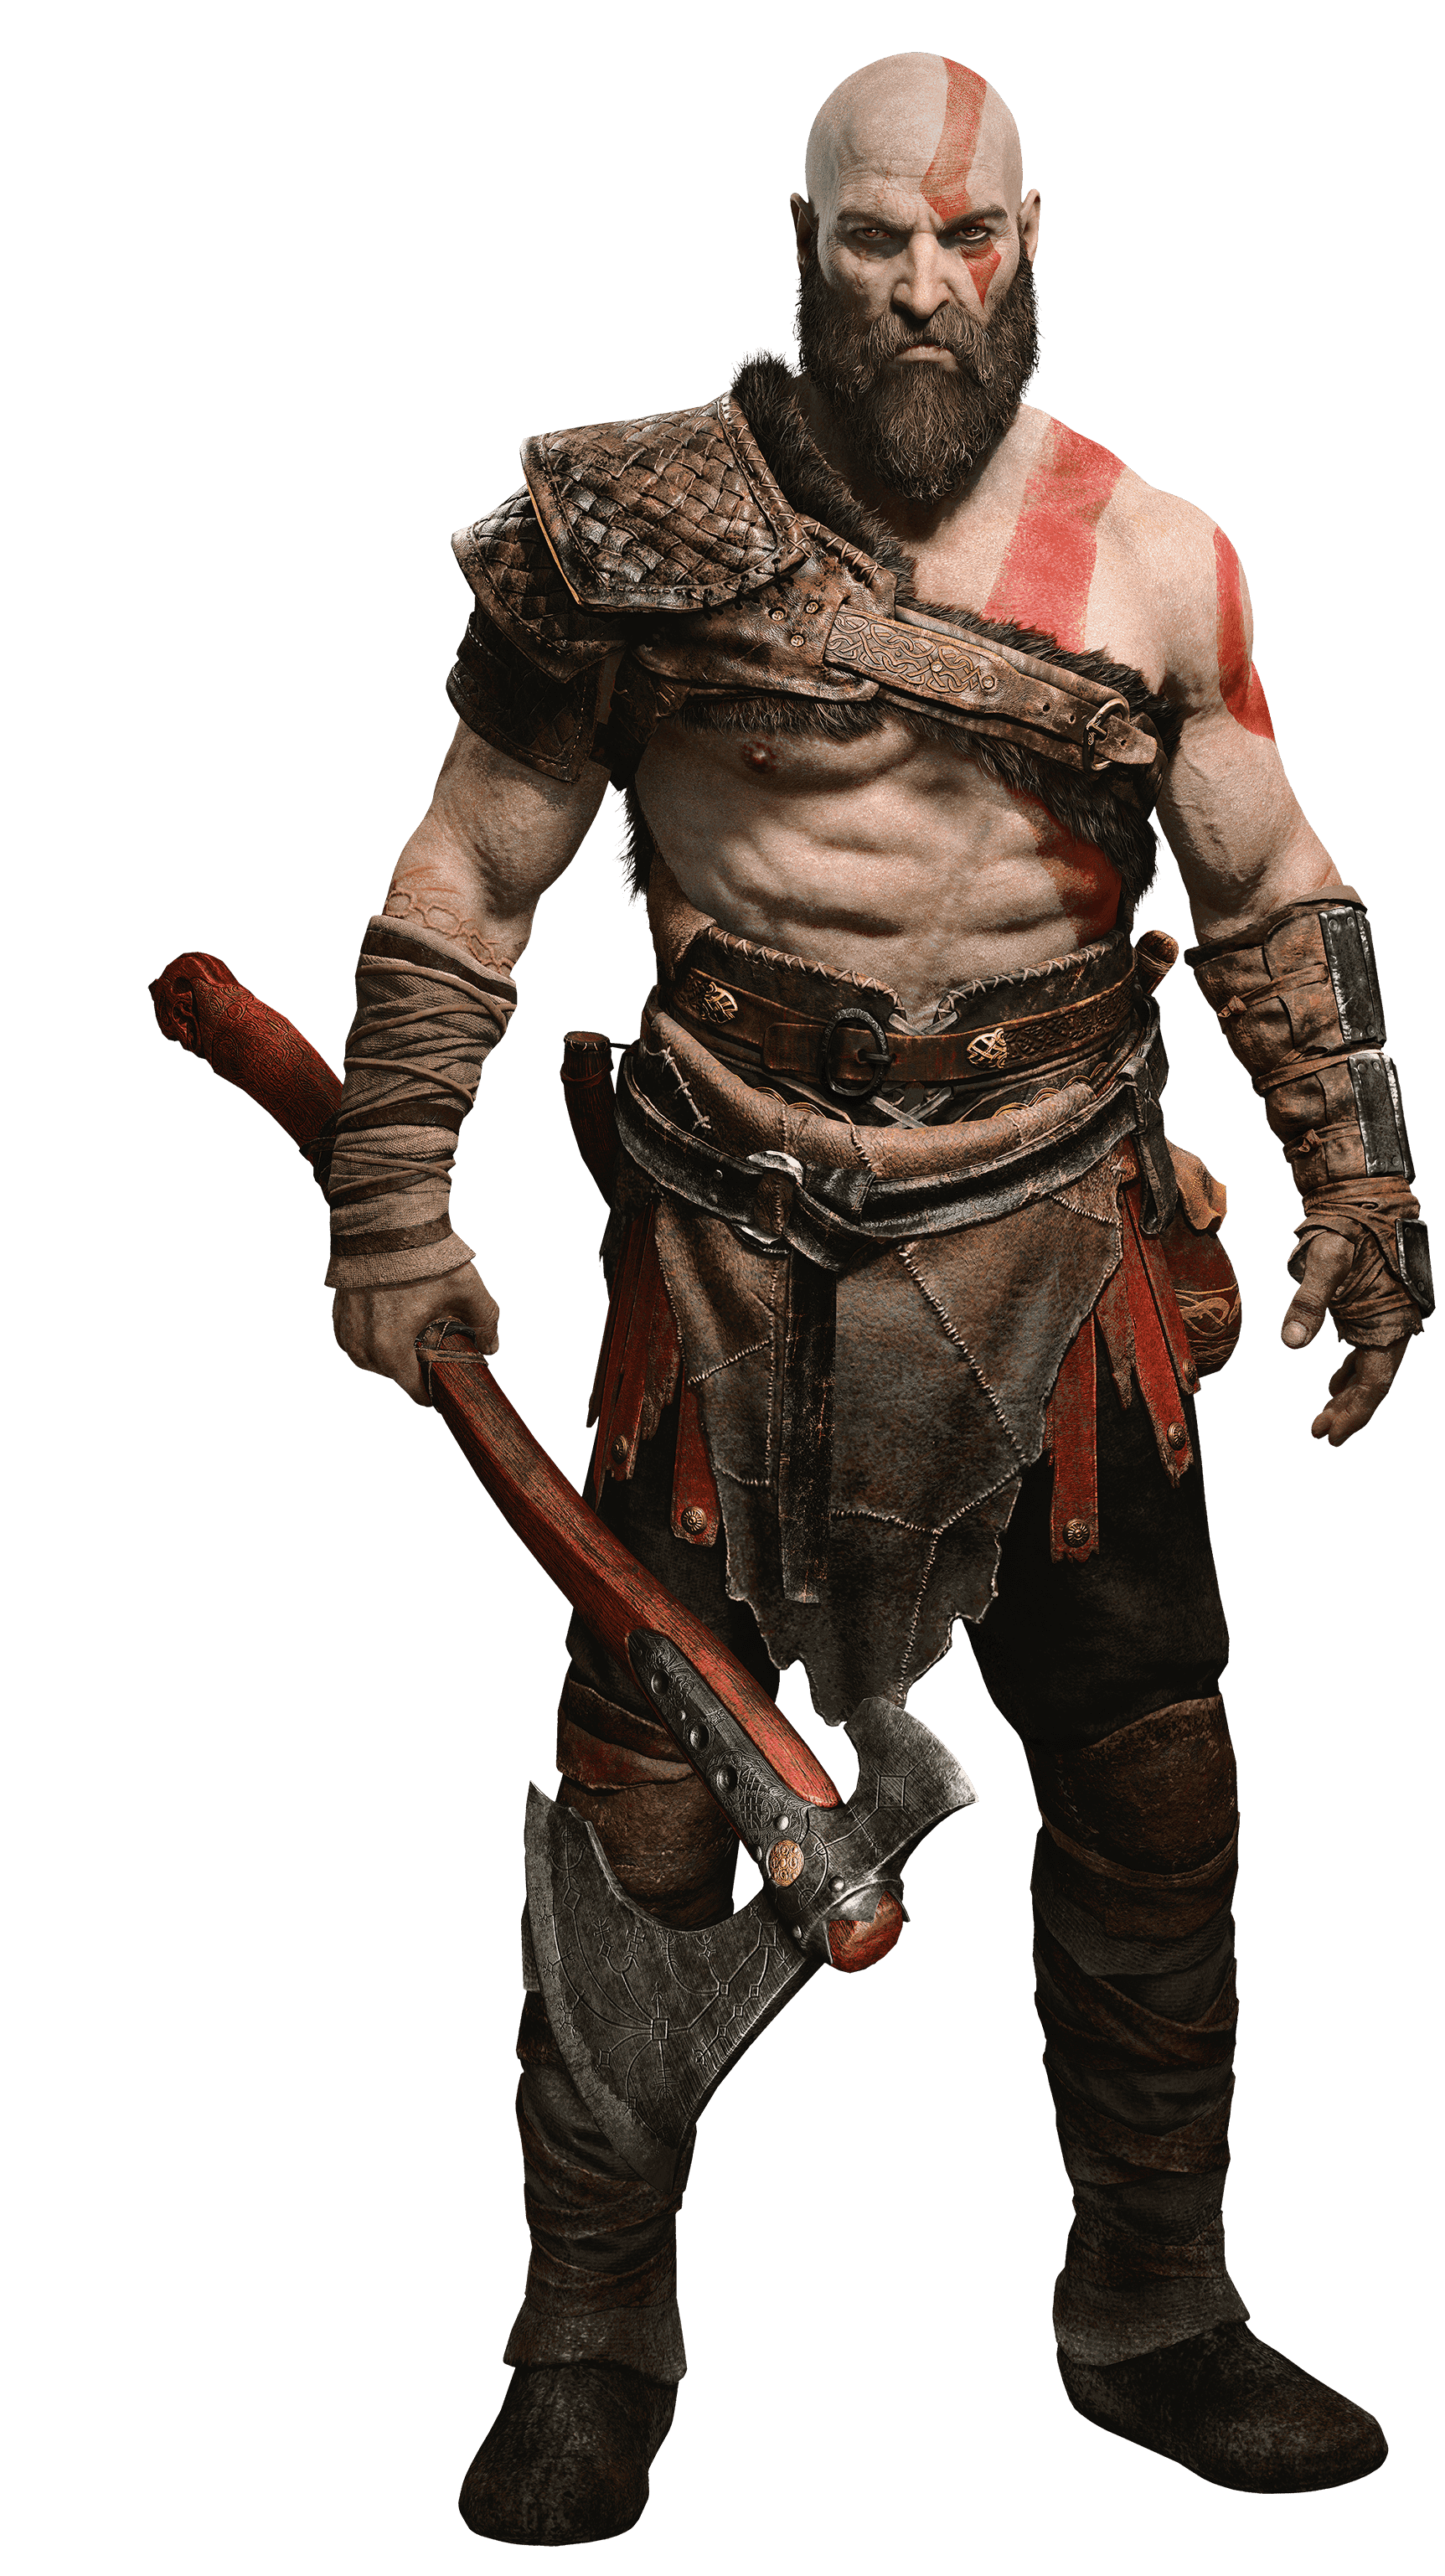 God of War PNG Image